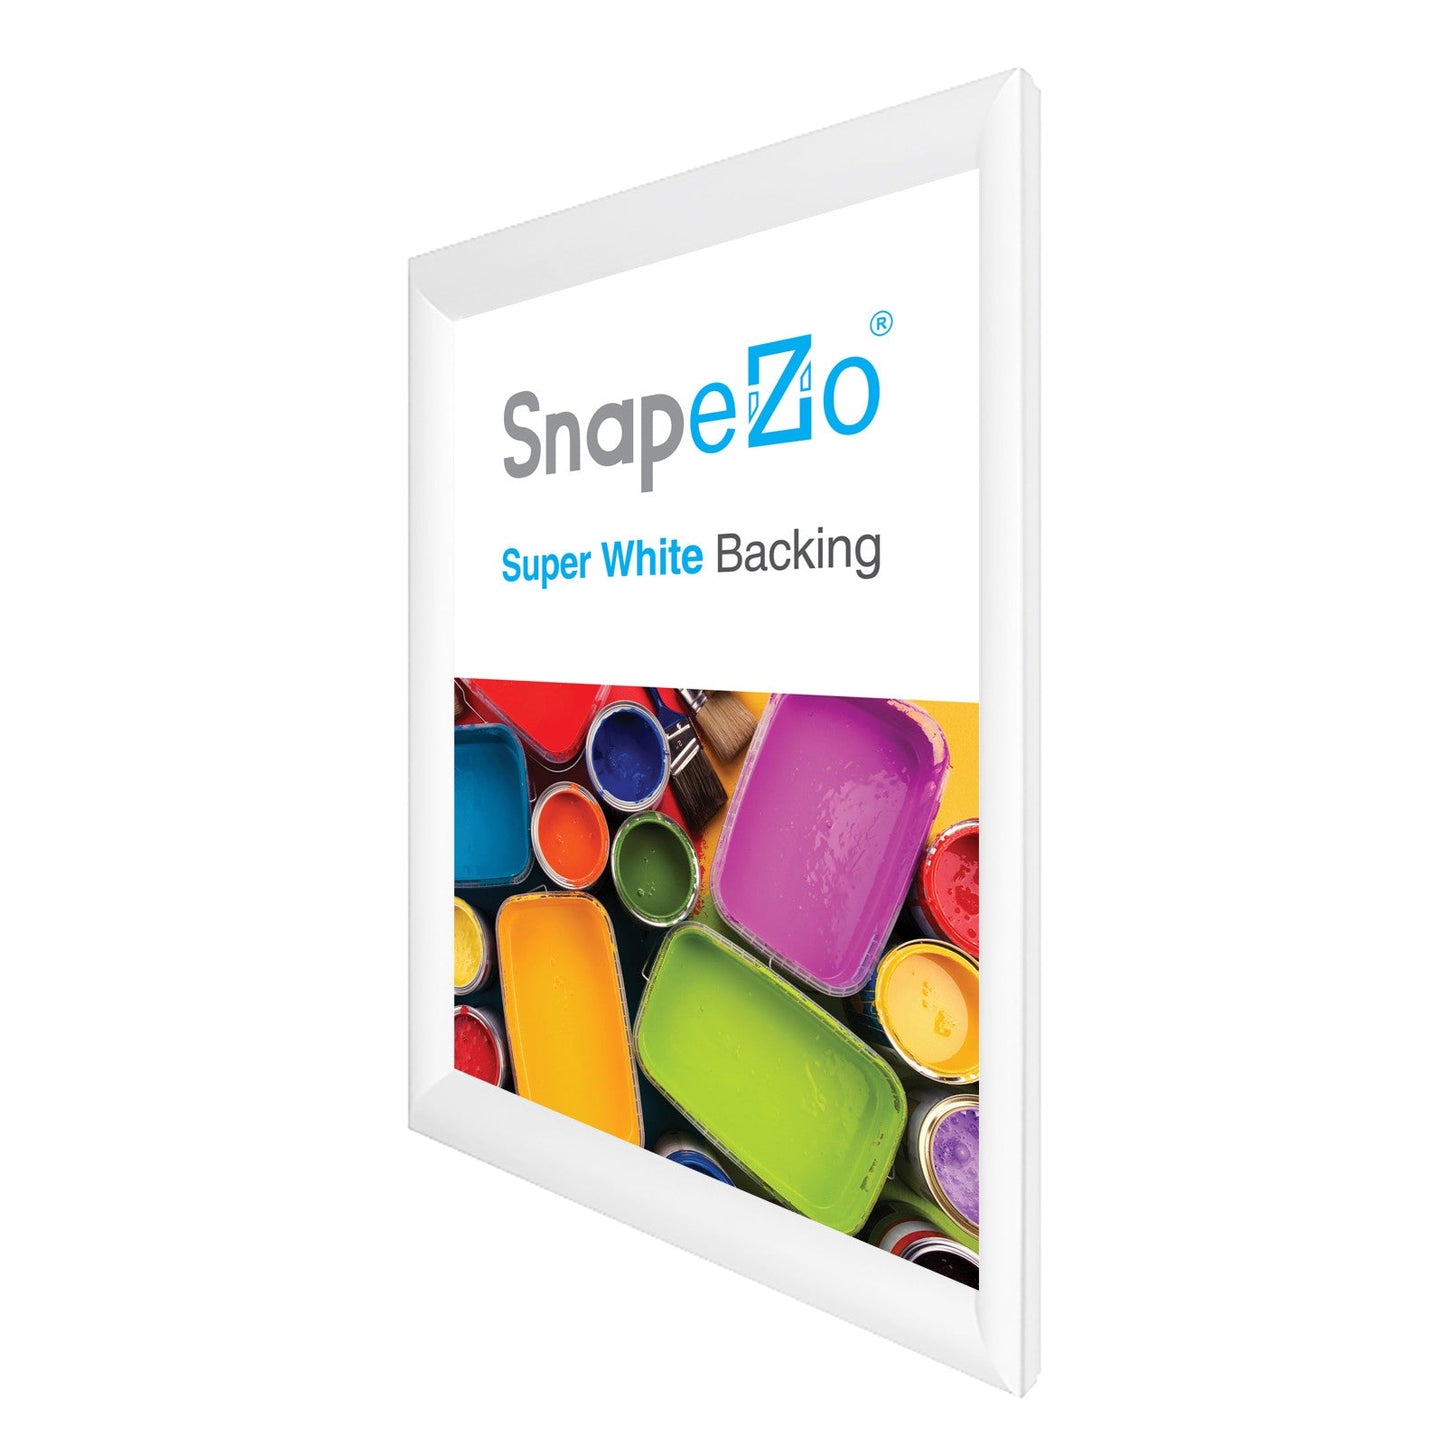 29x40 White SnapeZo® Snap Frame - 1.2" Profile